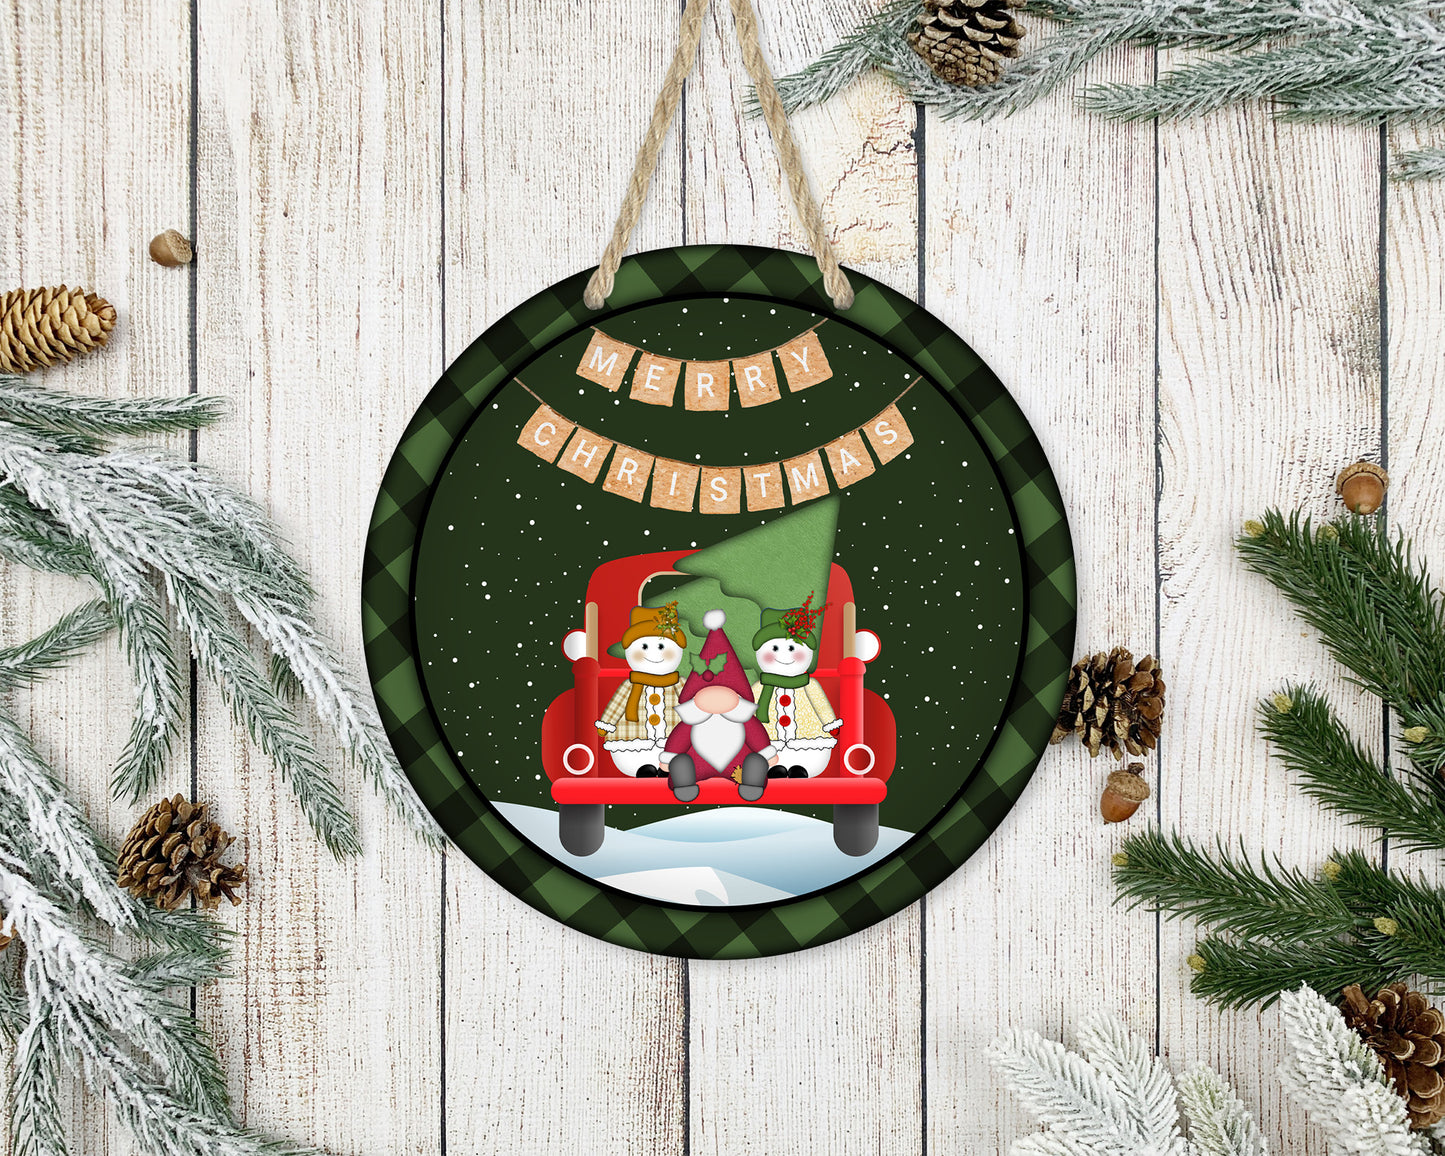 Merry Christmas Banner - 10" Round Door Hanger